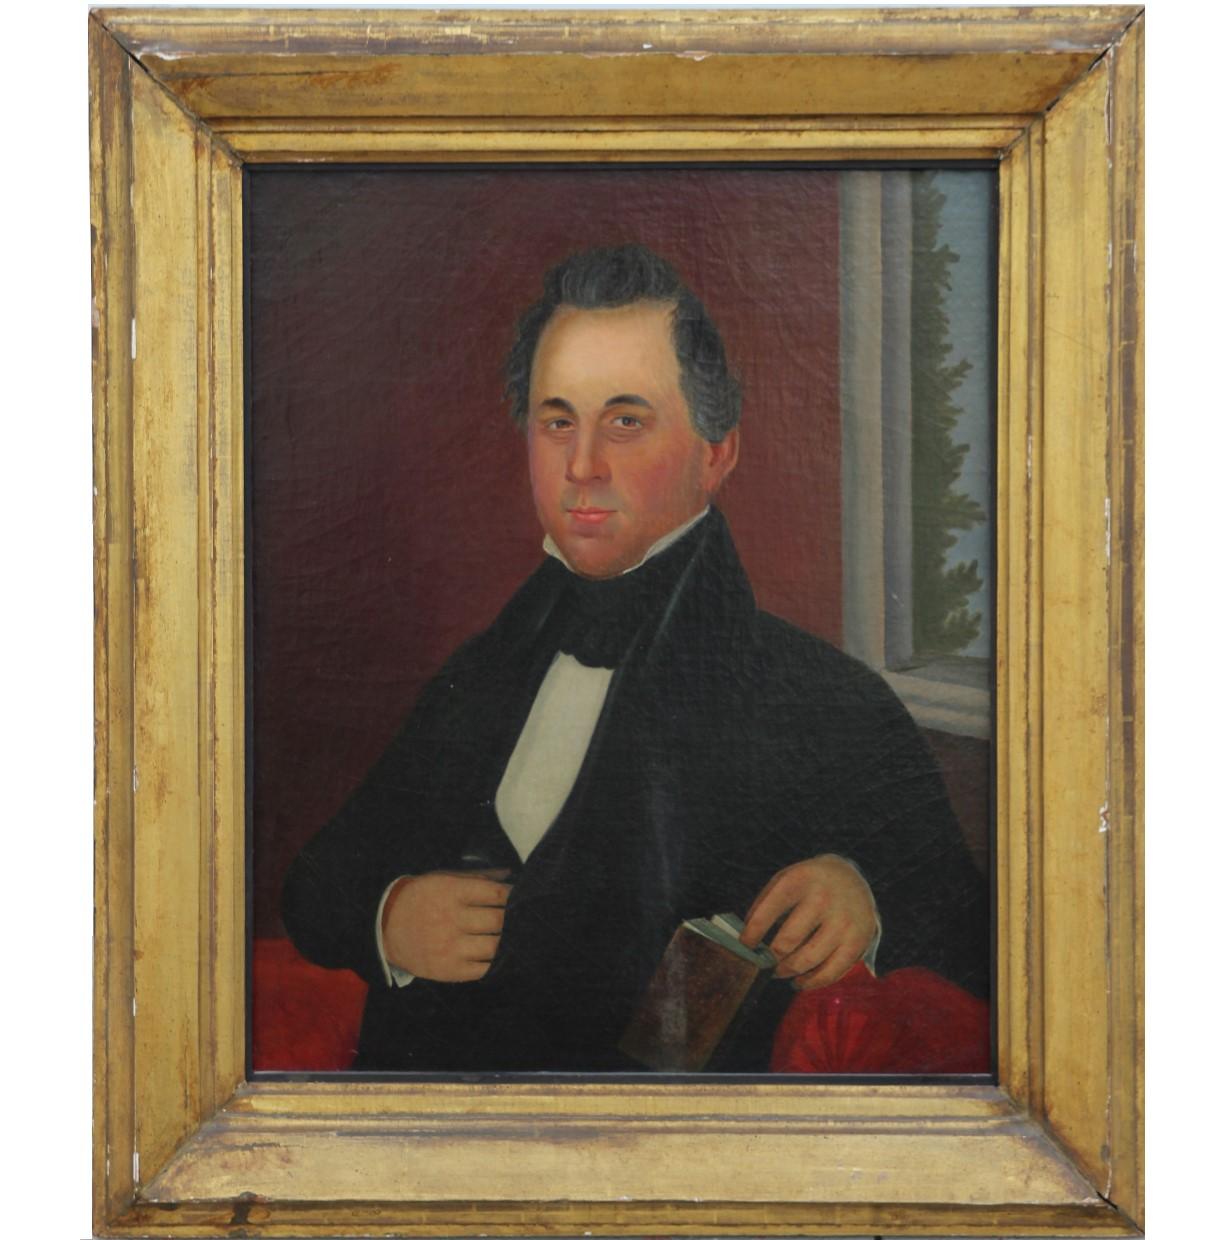 Amerikanisches Porträt eines Mannes aus dem frühen 19. Jahrhundert